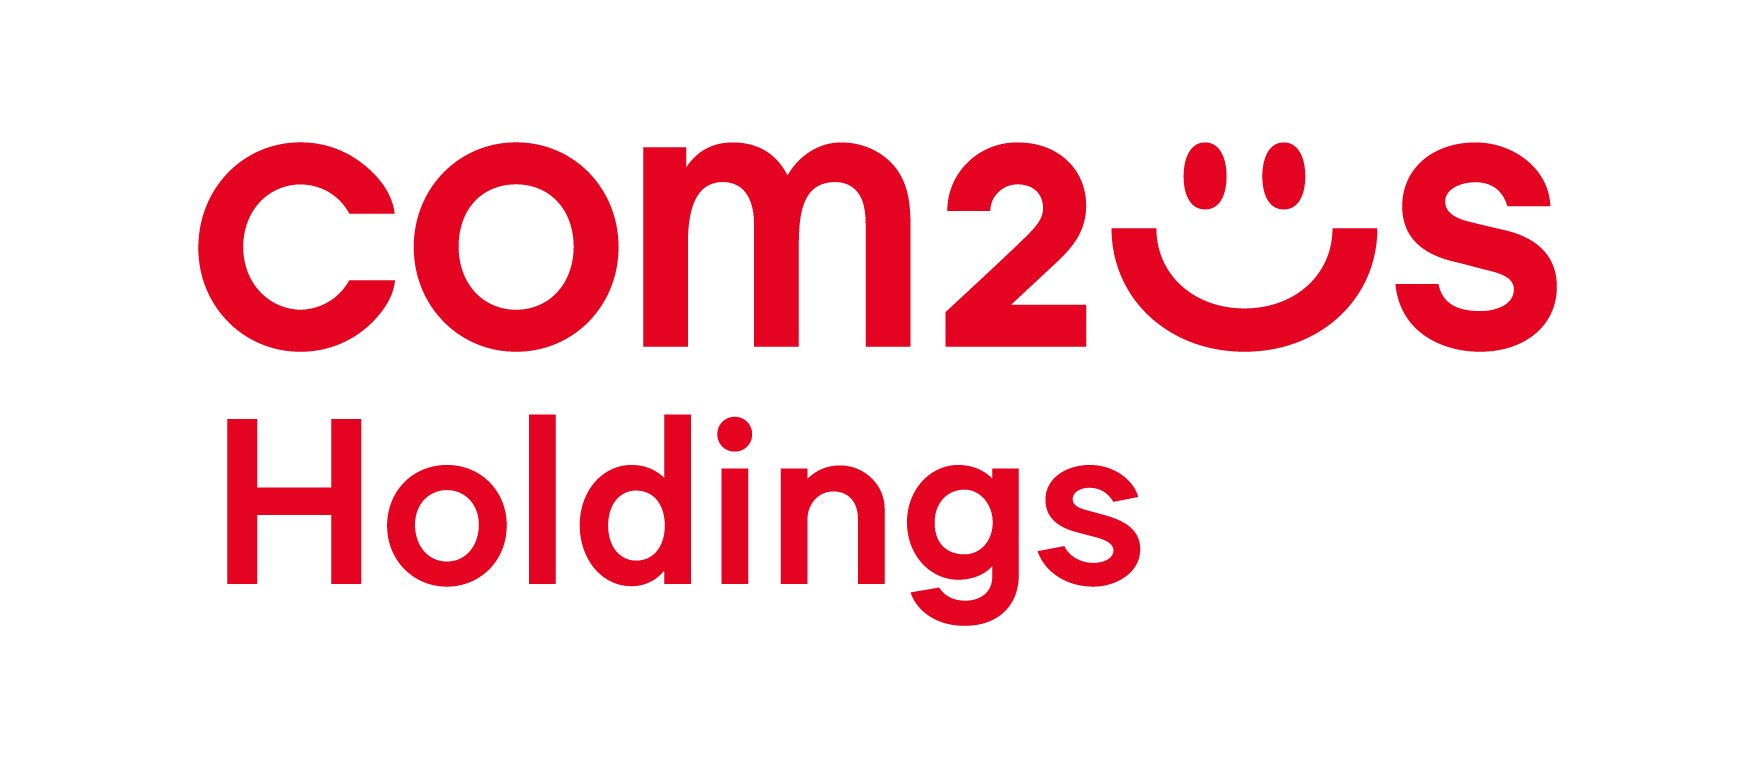 韓國 Gamevil 宣布將以全新名稱 Com2uS Holdings 再出發